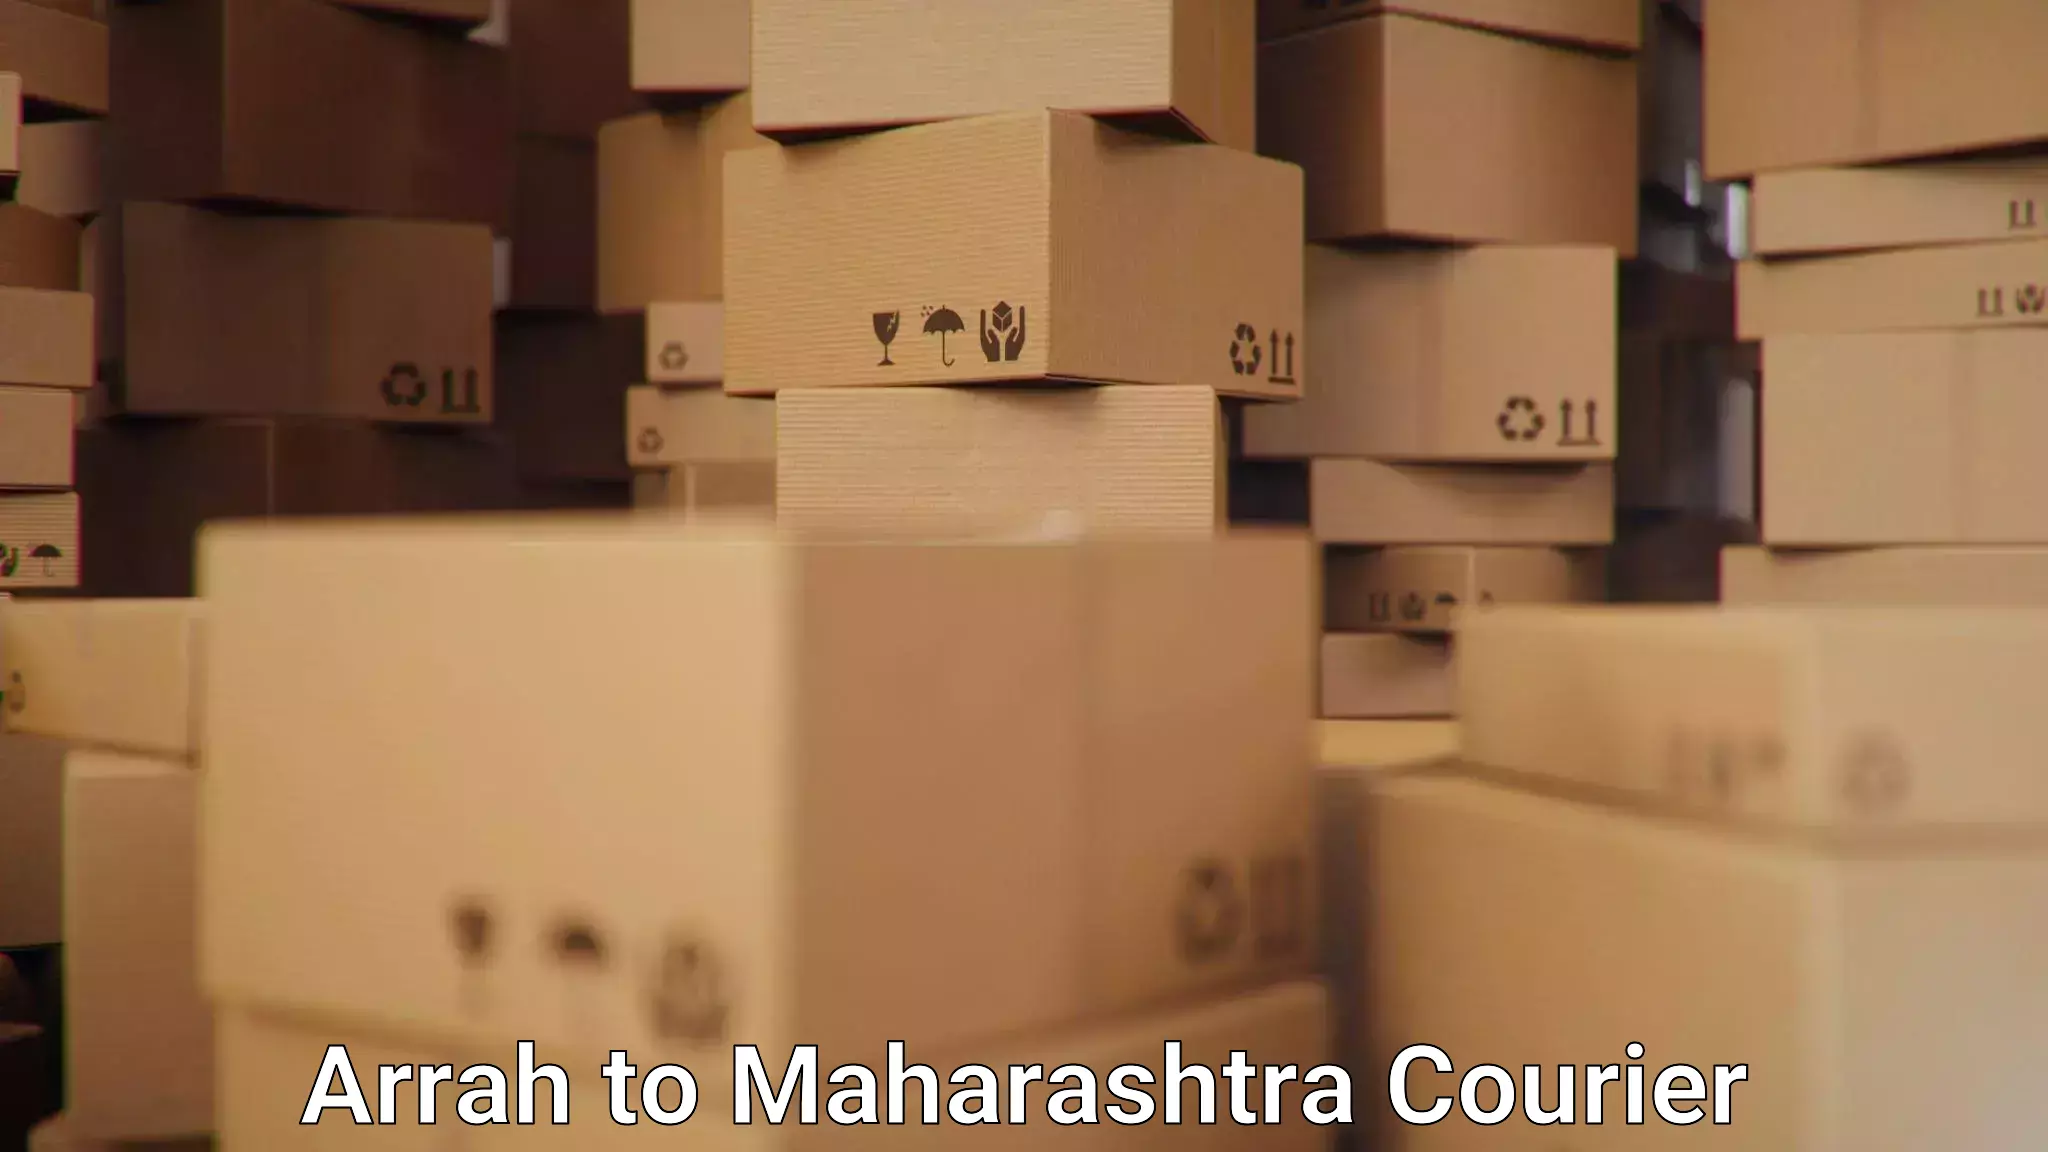 Smart logistics solutions Arrah to Maharashtra